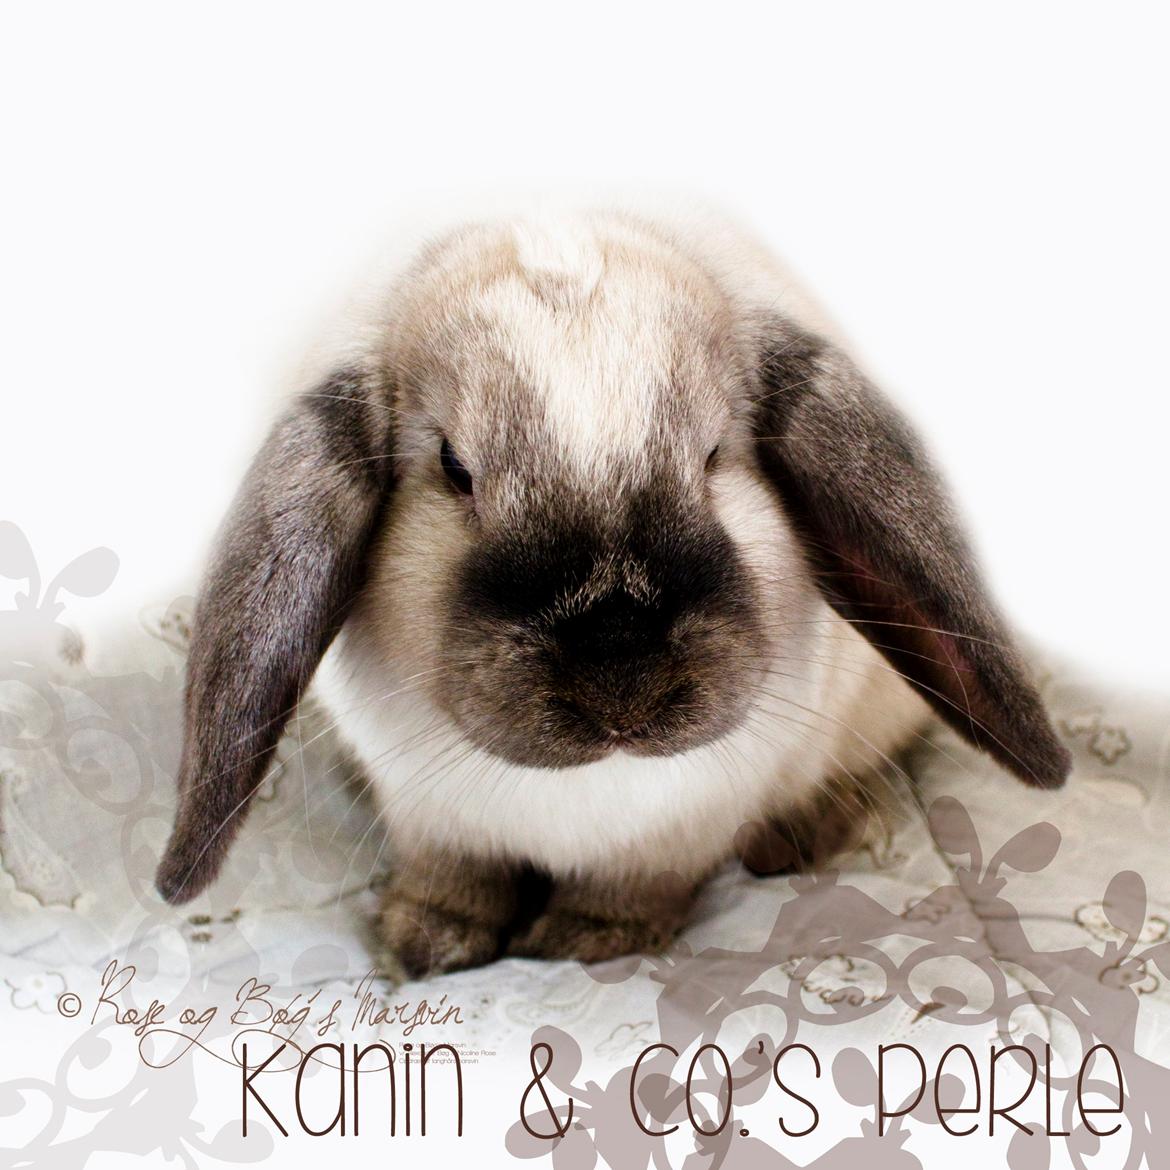 Kanin Kanin & Co.'s Perle - Kanin & Co.'s Perle <3 Den 9. oktober 2013 billede 37